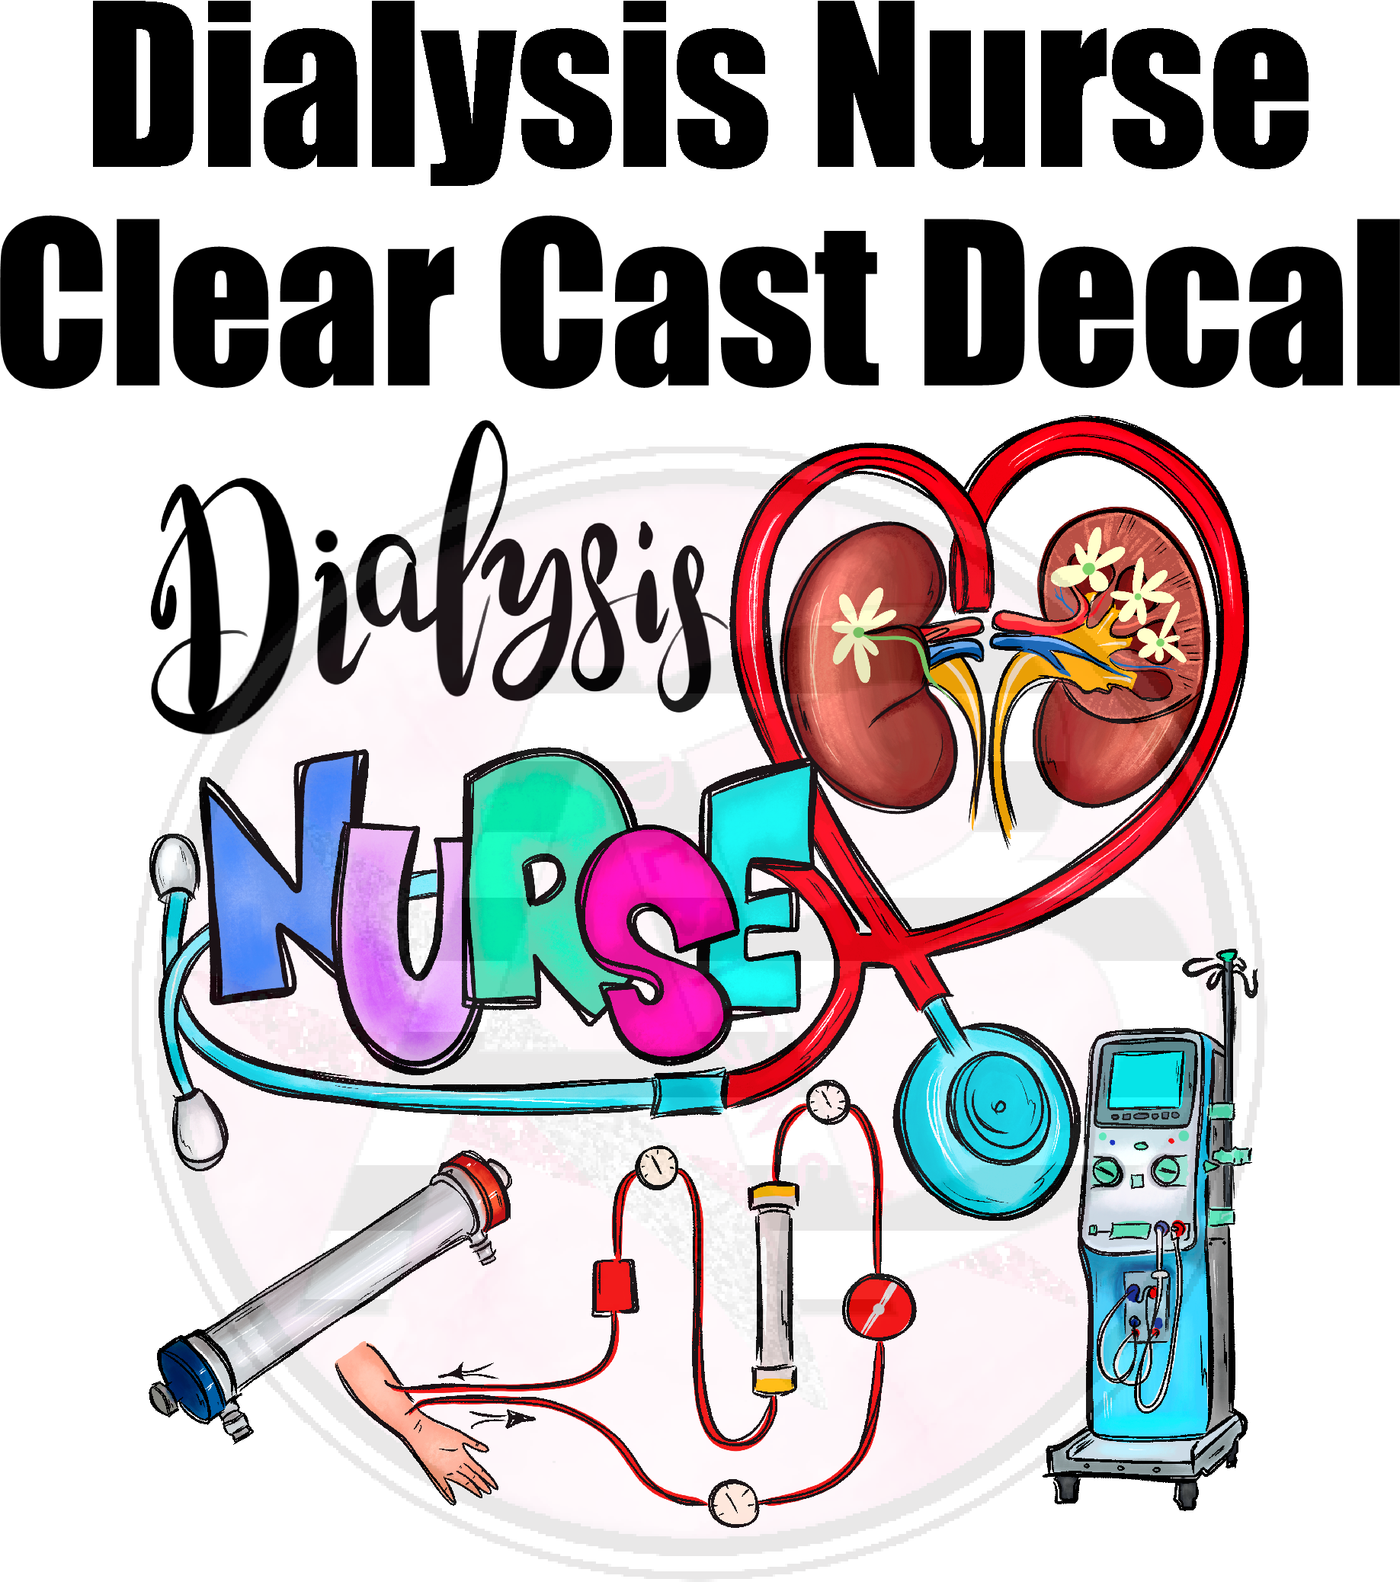 Dialysis Nurse - Clear Cast Decal